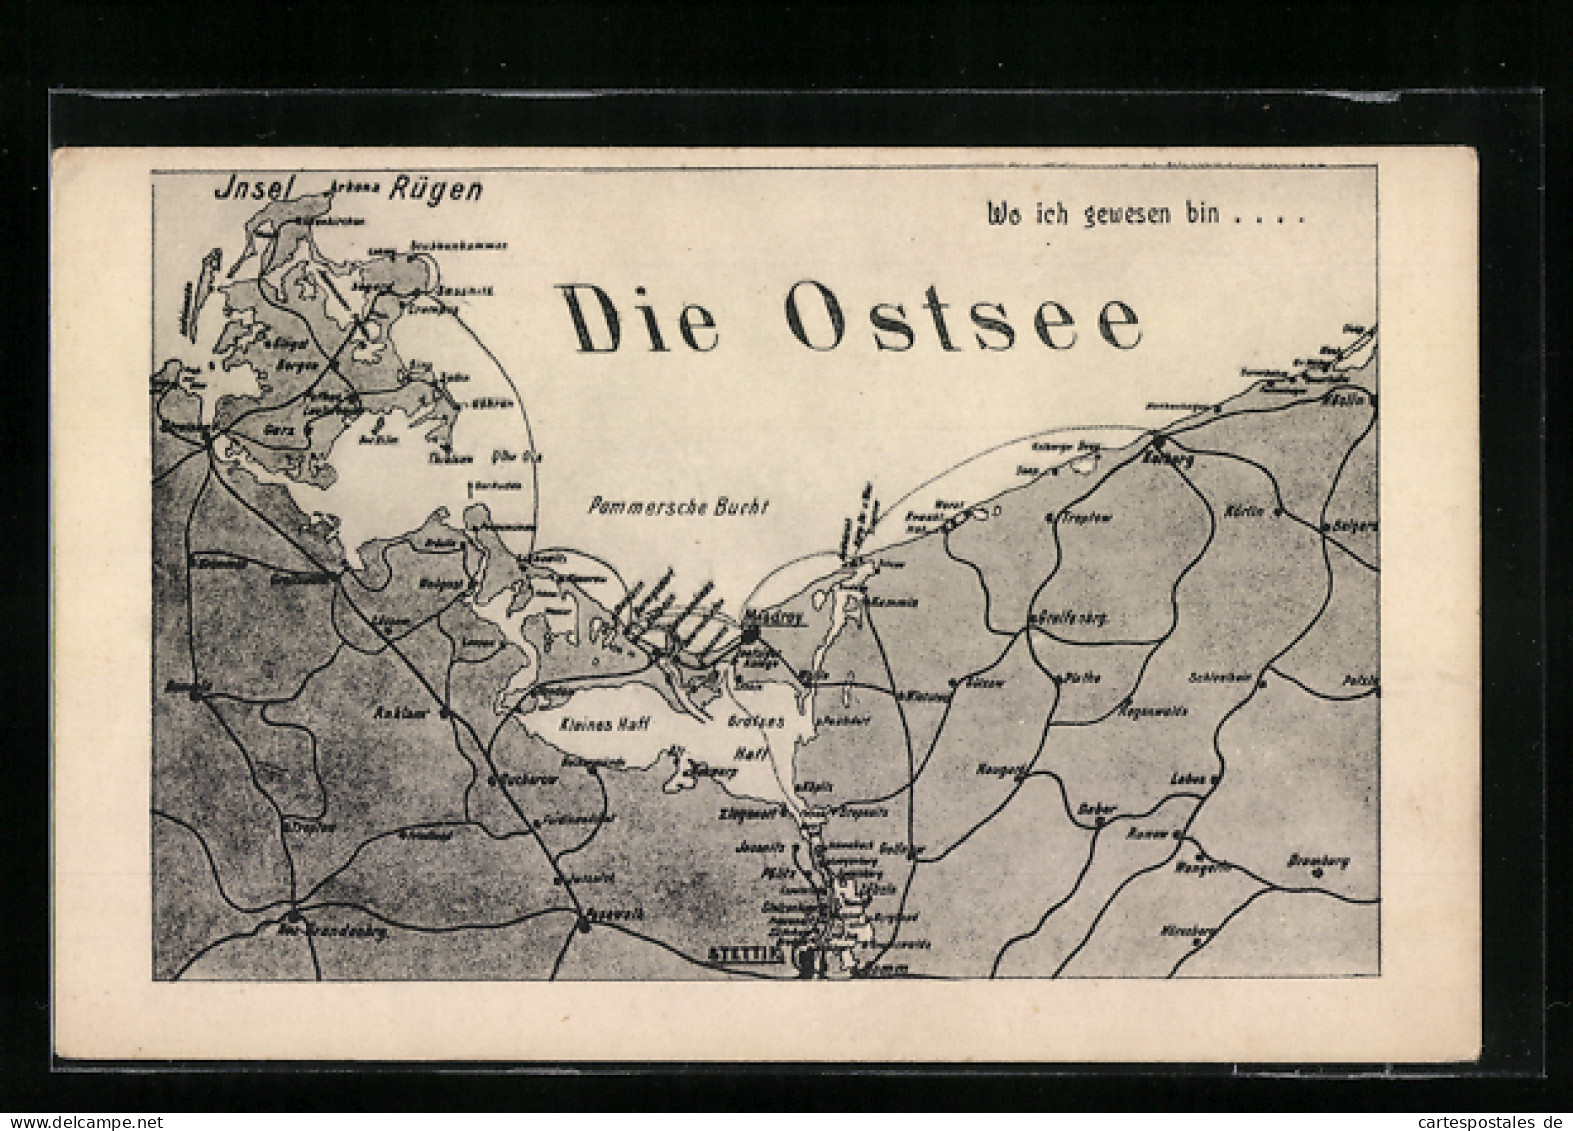 Künstler-AK Arkona /Rügen, Landkarte Mit Göhren, Treptow Und Misdroy  - Cartes Géographiques